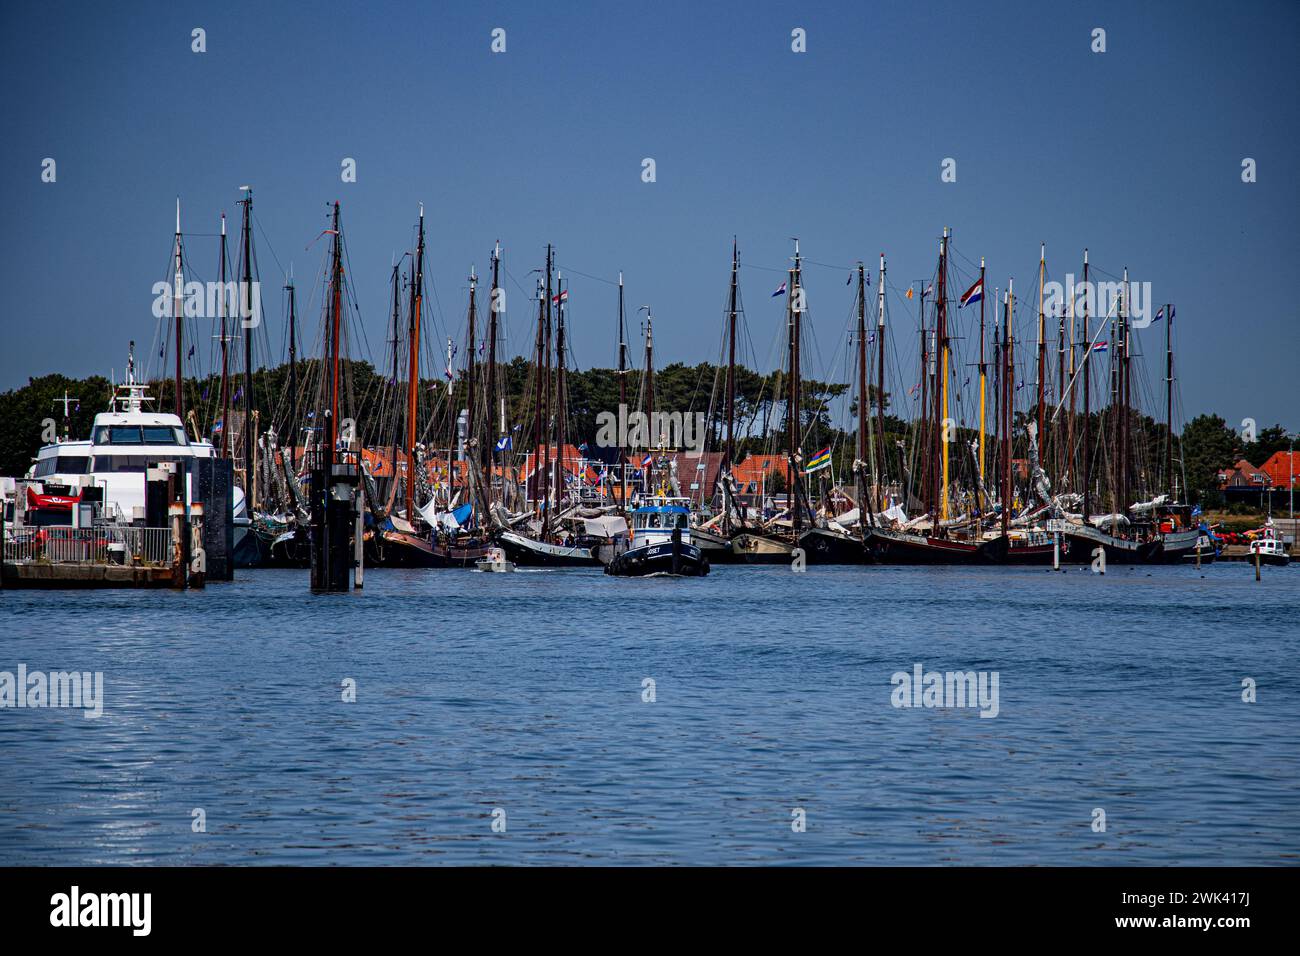 Eine Flotte von Booten, die an einem Dock vorbeischwimmen, umgeben von anderen Schiffen Stockfoto